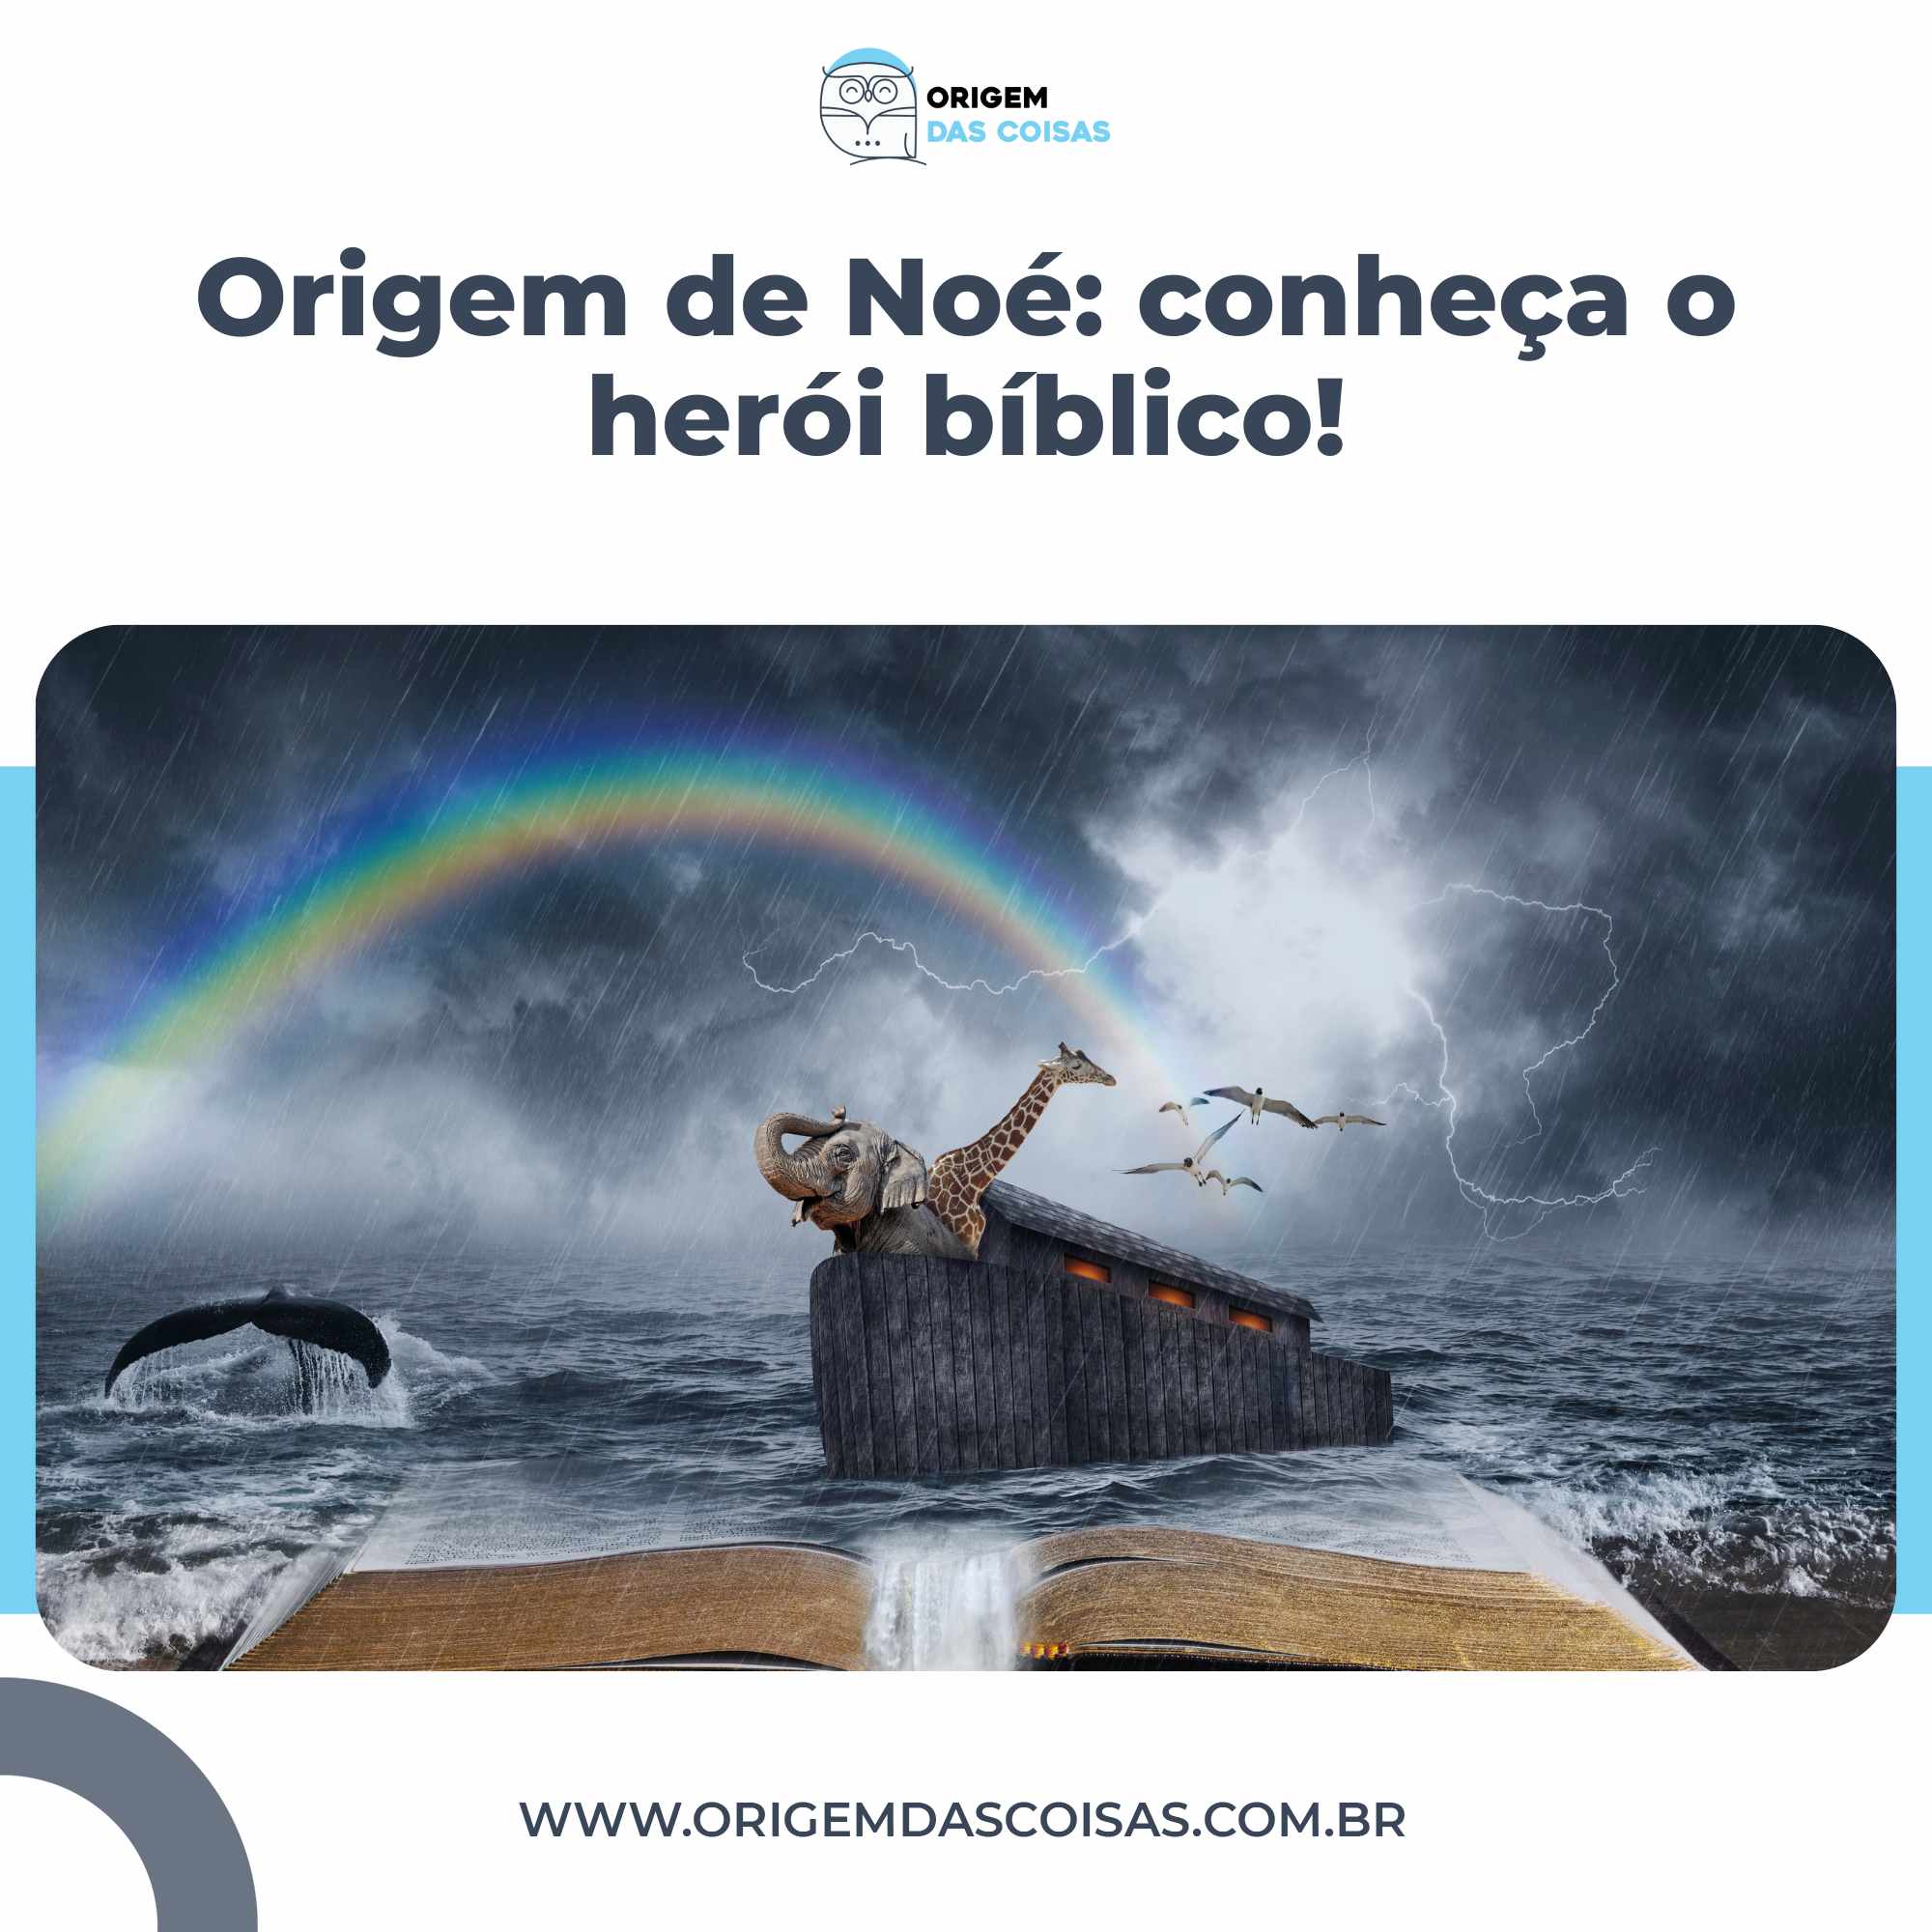 Origem de Noé conheça o herói bíblico!